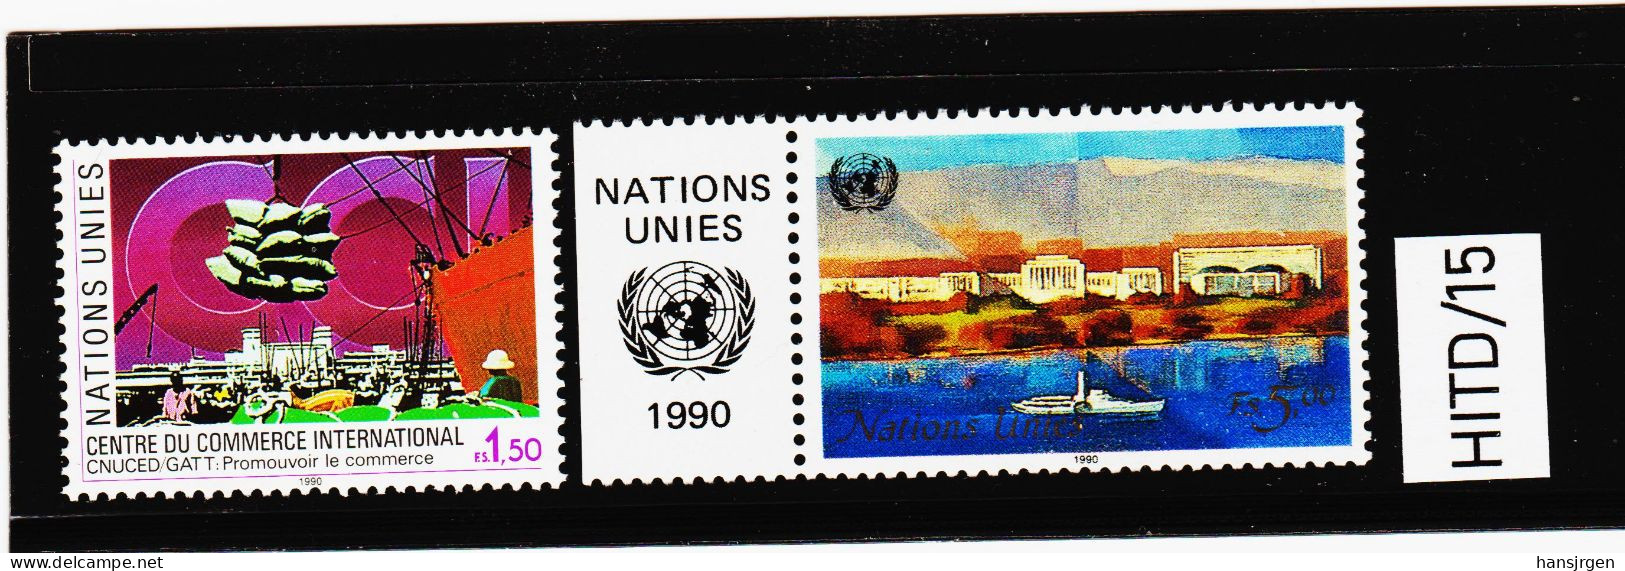 HITD/15 UNO GENF 1990  MICHL 182/83 ** Postfrisch Siehe ABBILBUNG - Unused Stamps